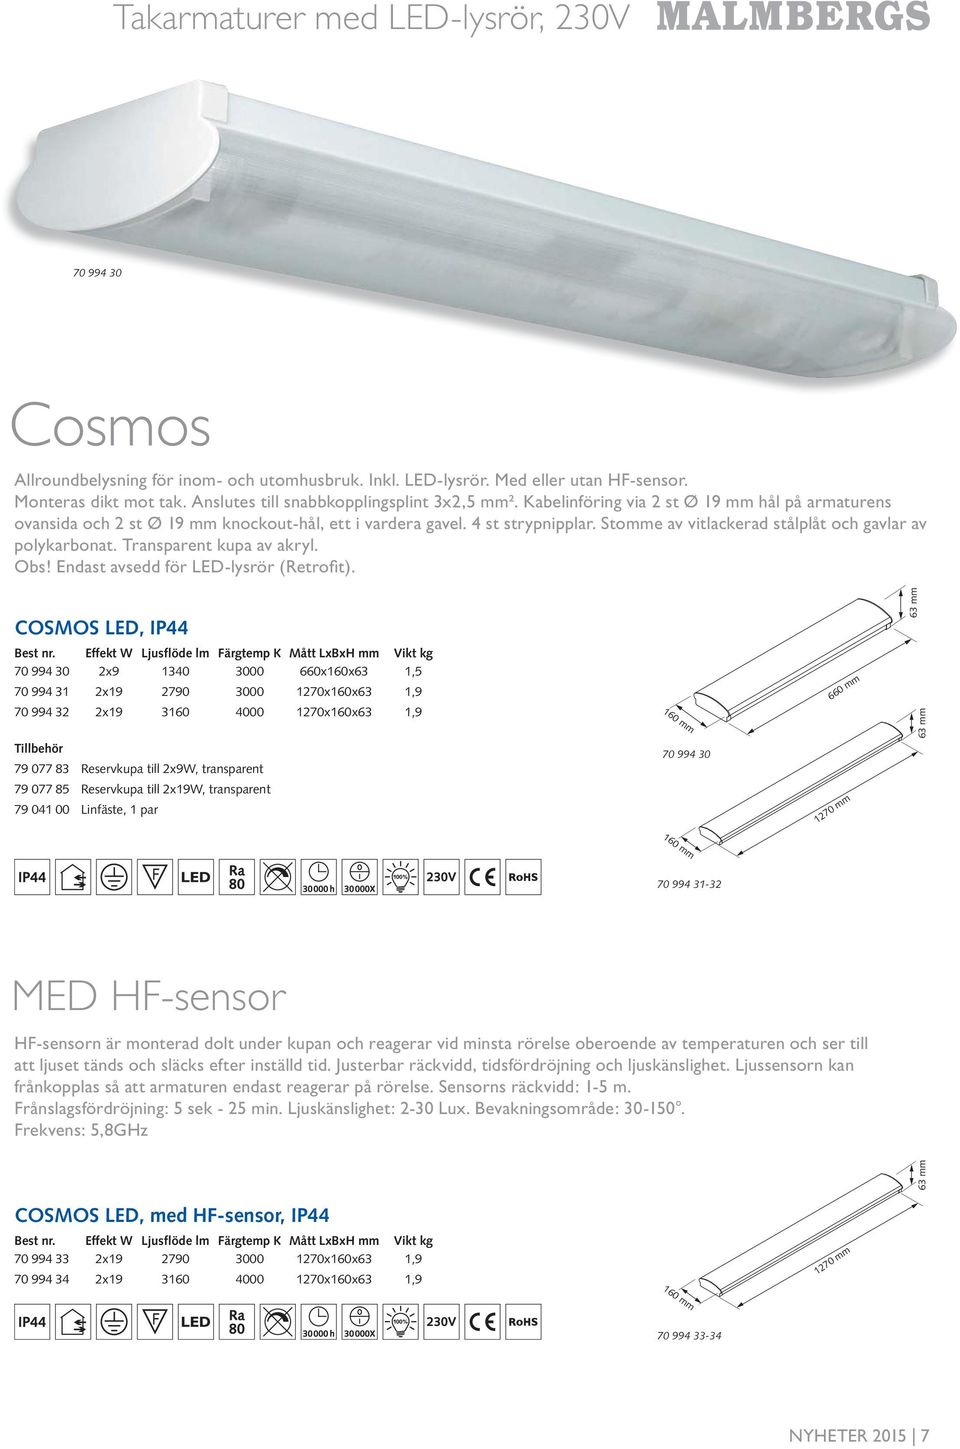 Transparent kupa av akryl. Obs! Endast avsedd för LED-lysrör (Retrofi t). COSMOS LED, IP 6 mm Best nr.